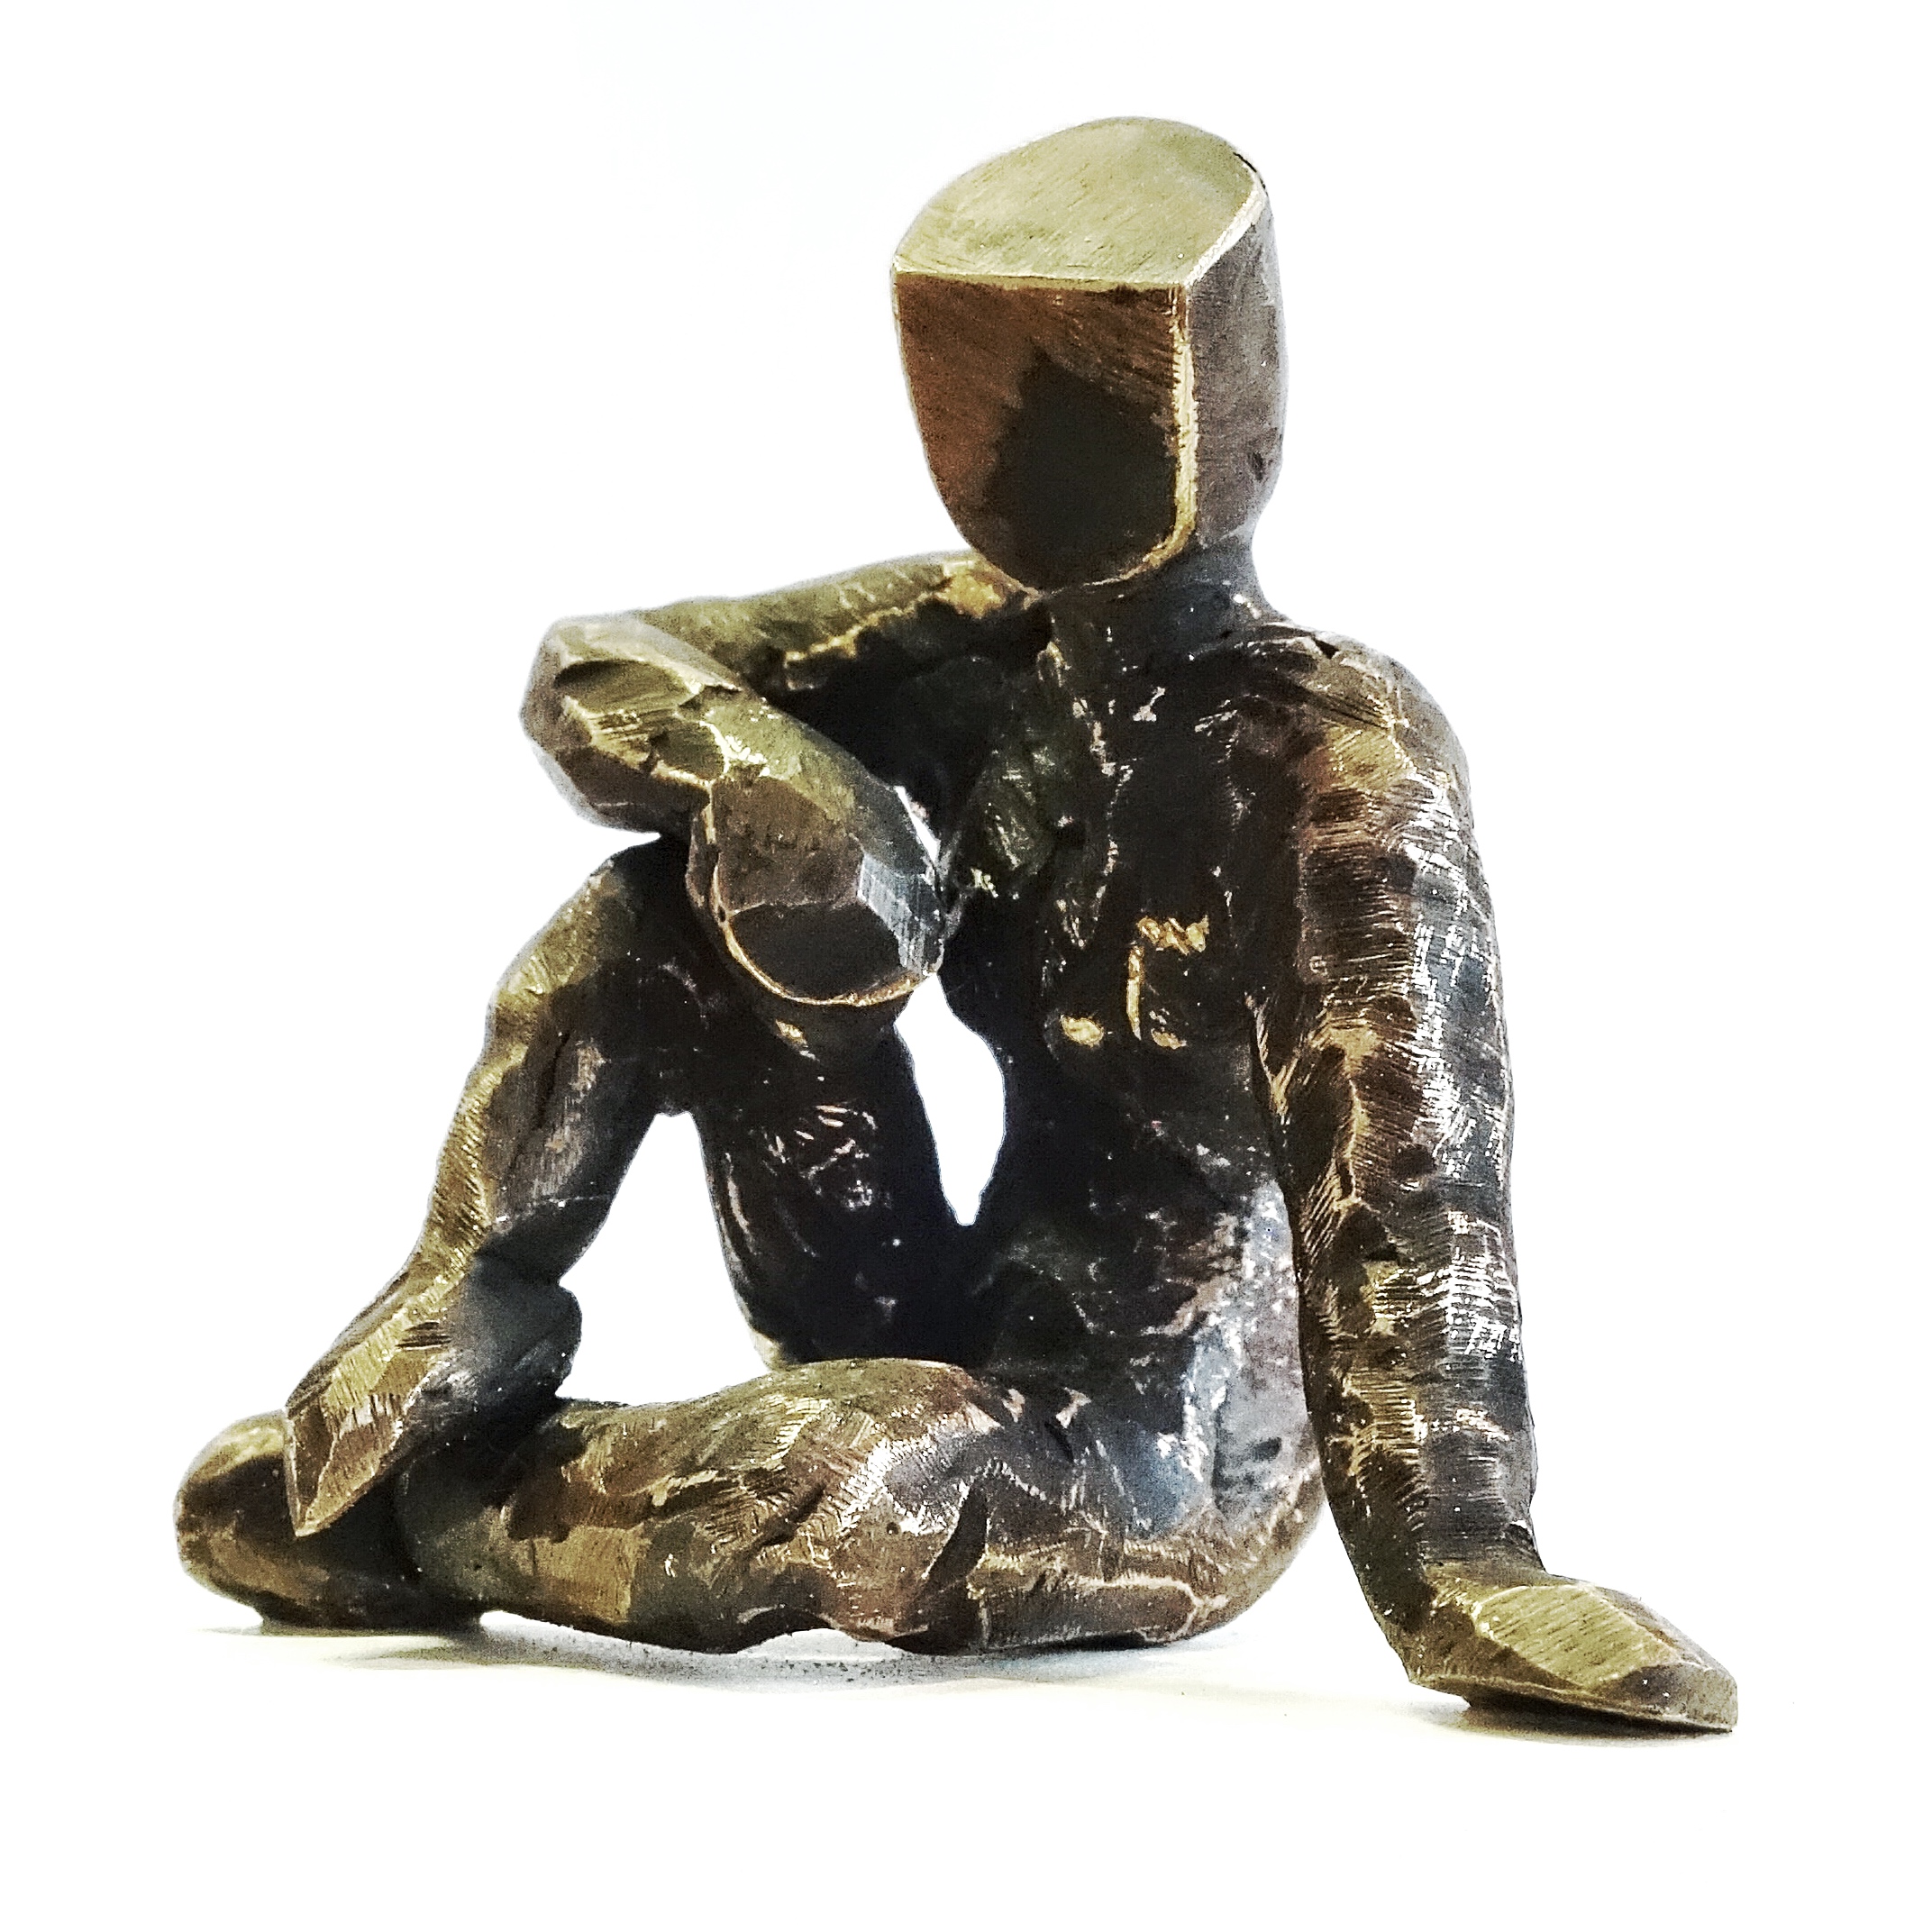 o.T., Serie KörperHaltungen II, 2018, Bronze, 4 x 3 x 3 cm